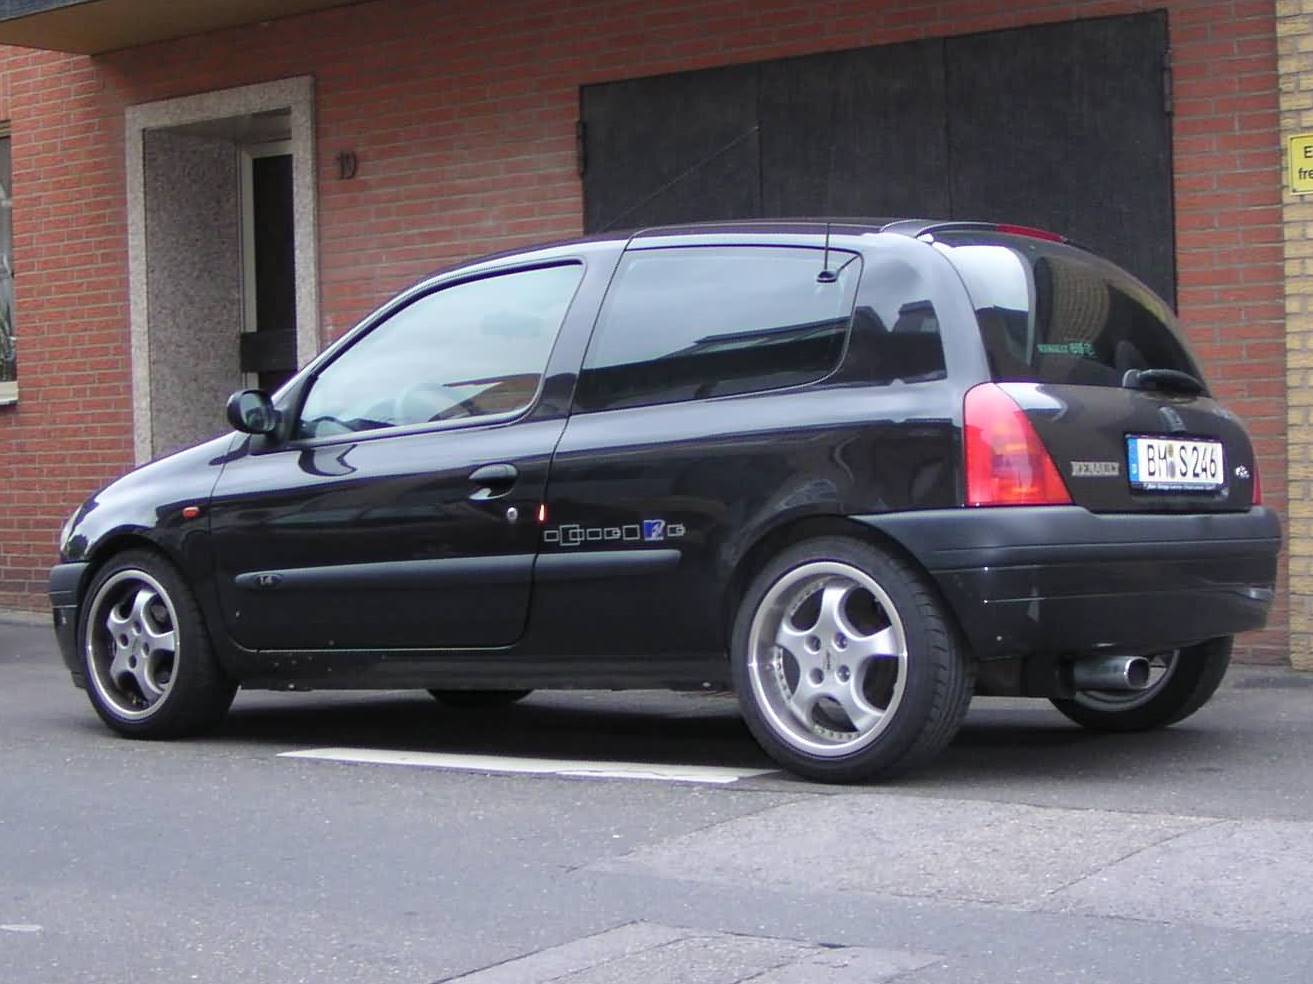 R-Clio-schwarz-002